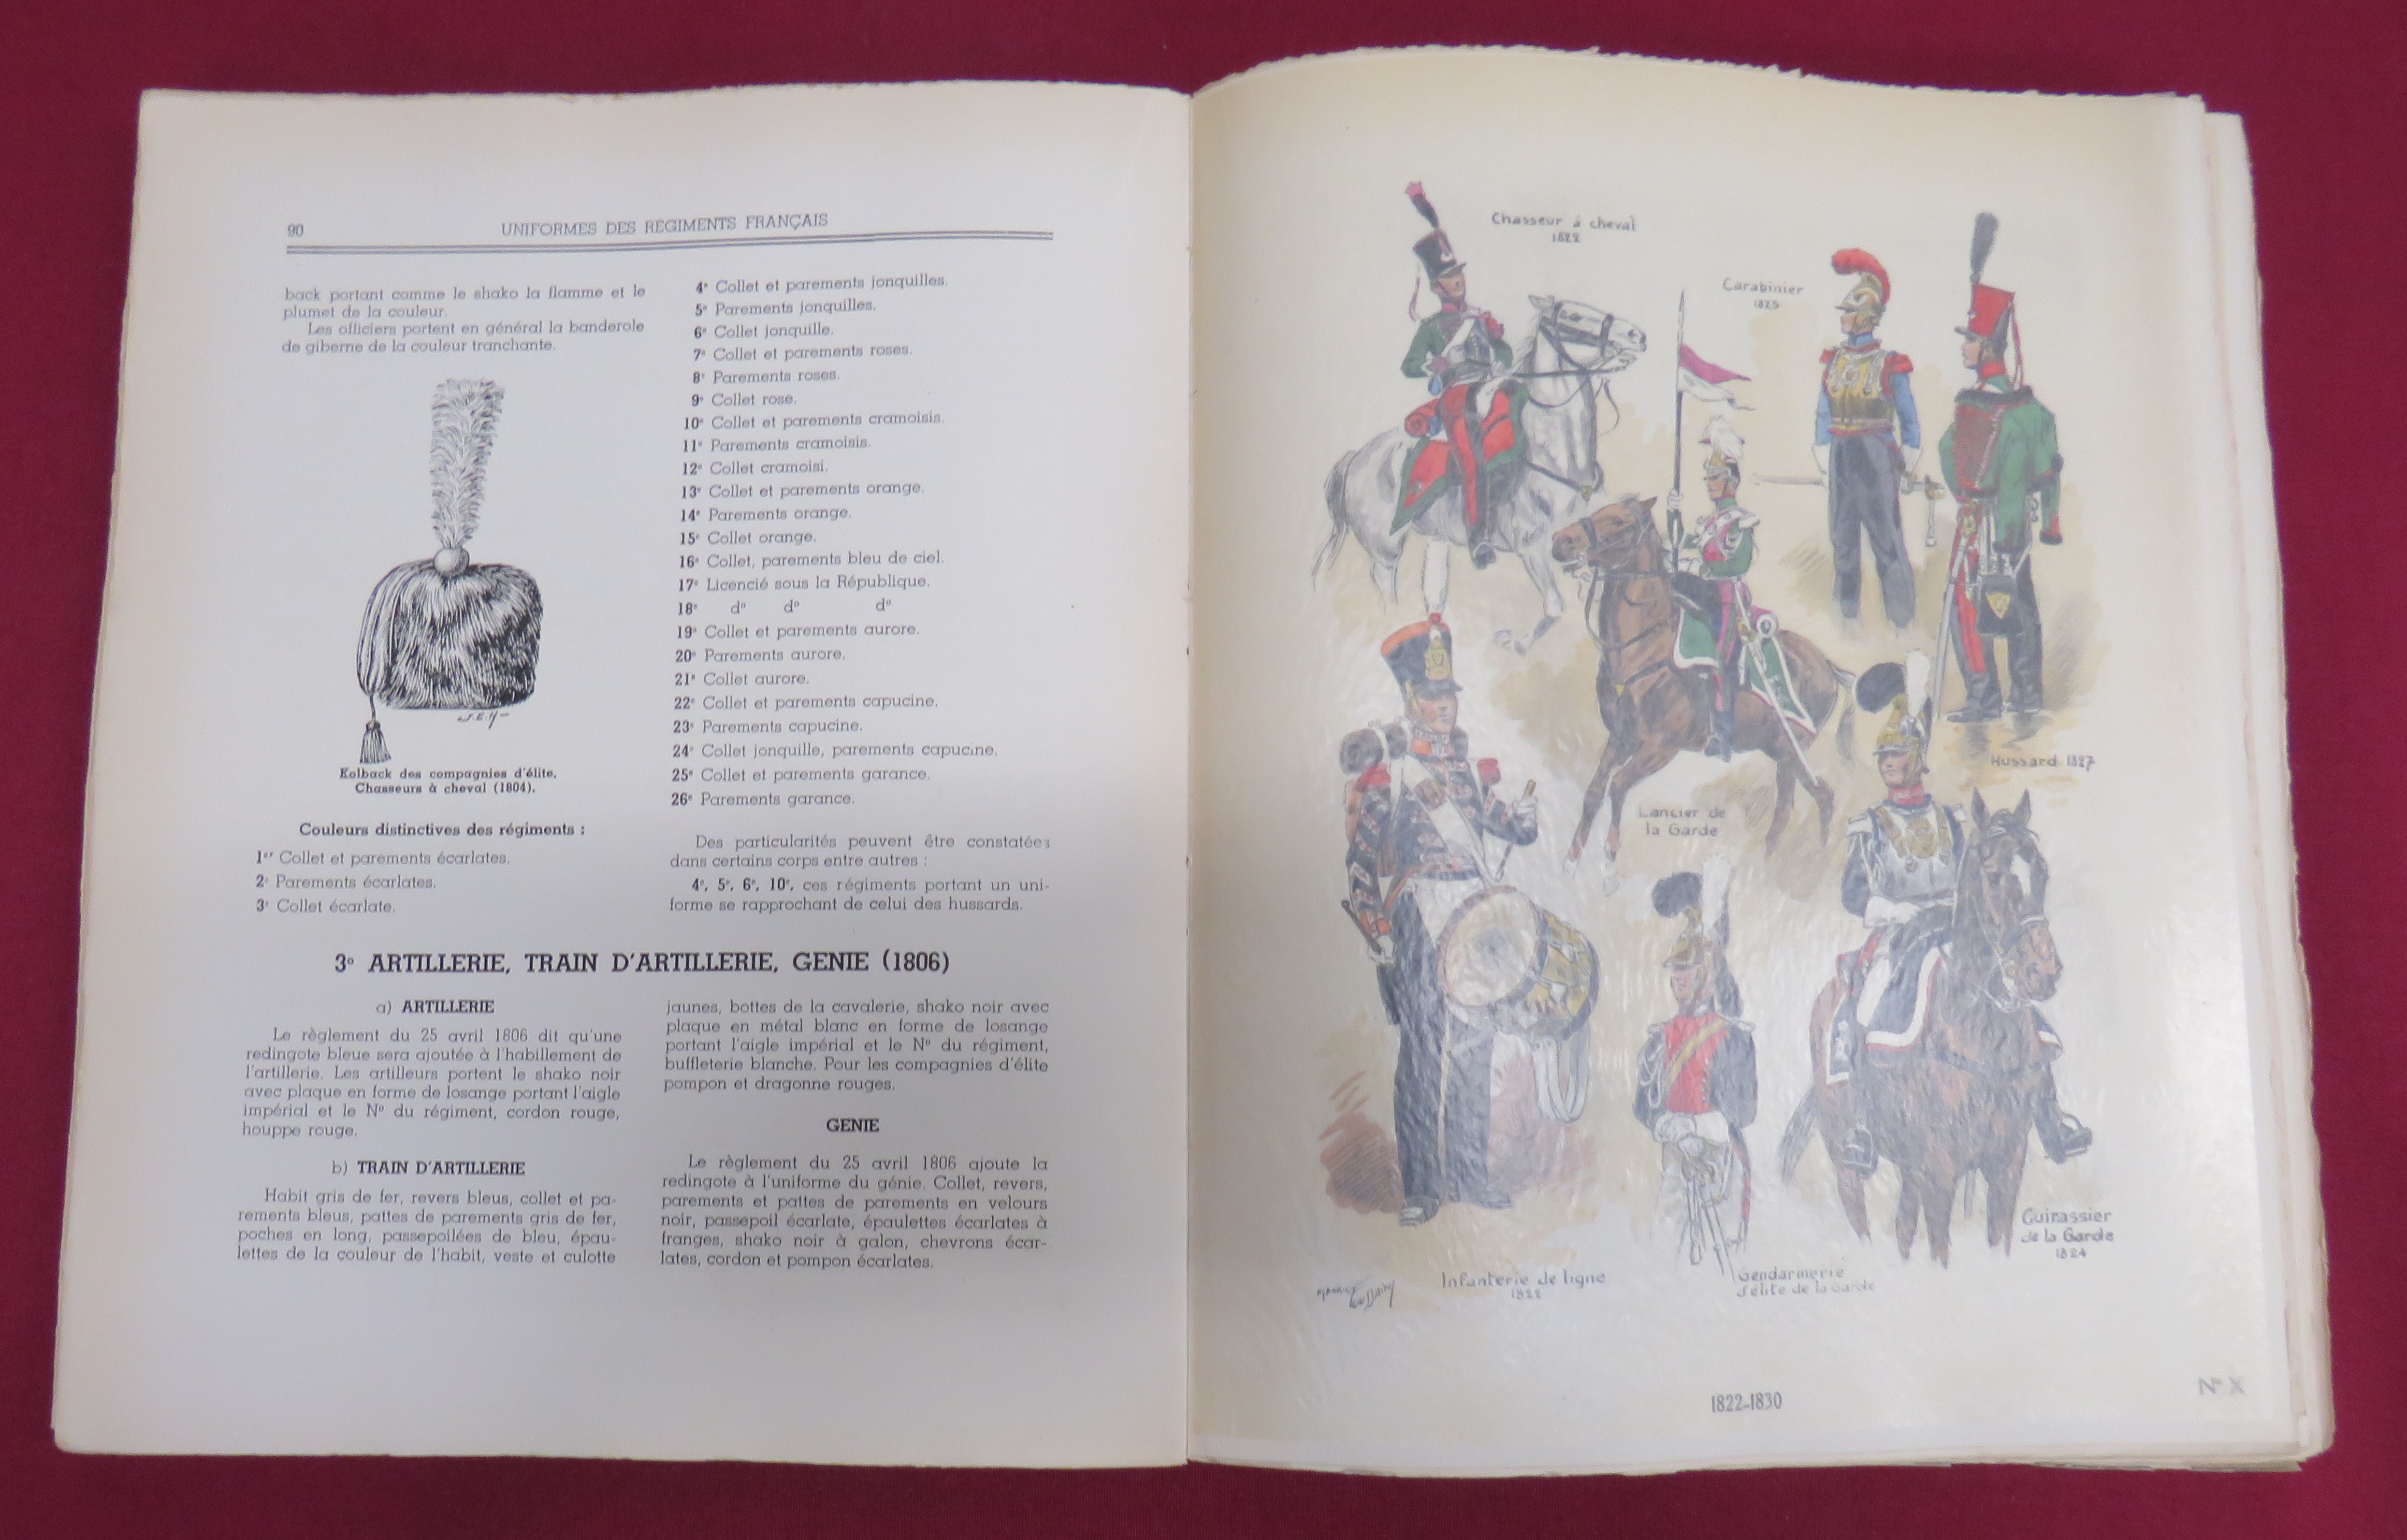 Uniformed des Regiments Francais de Louis XV a Nos Jours by Alex Cart. Scarce 1st Edition. No 33 - Image 2 of 2